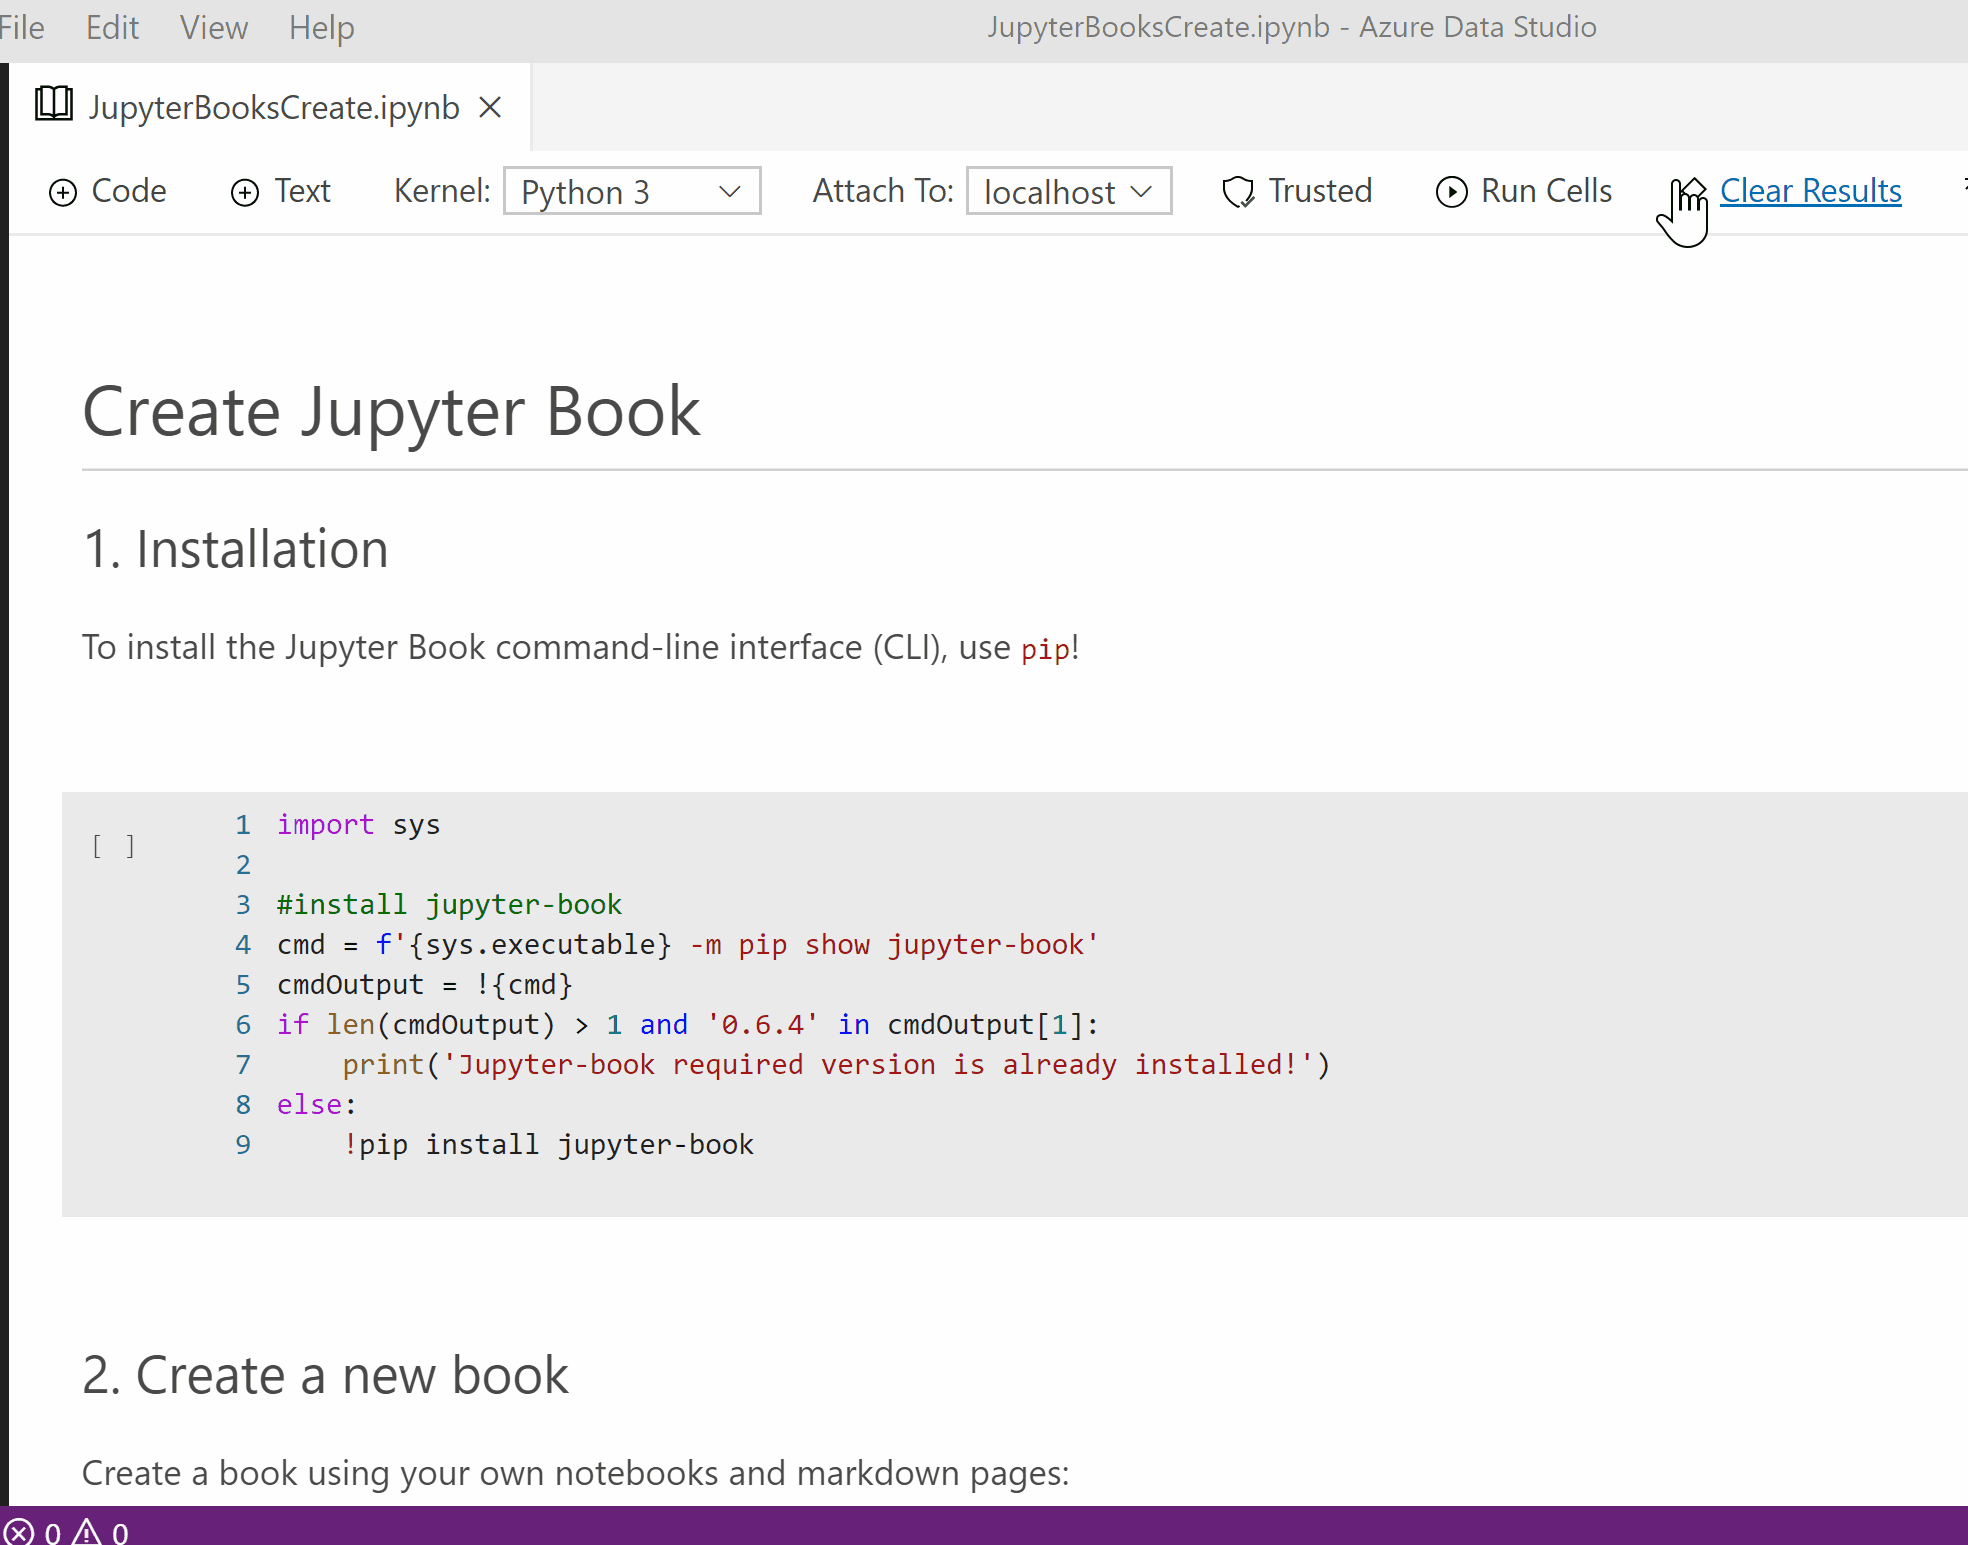 Creating a Jupyter Book.